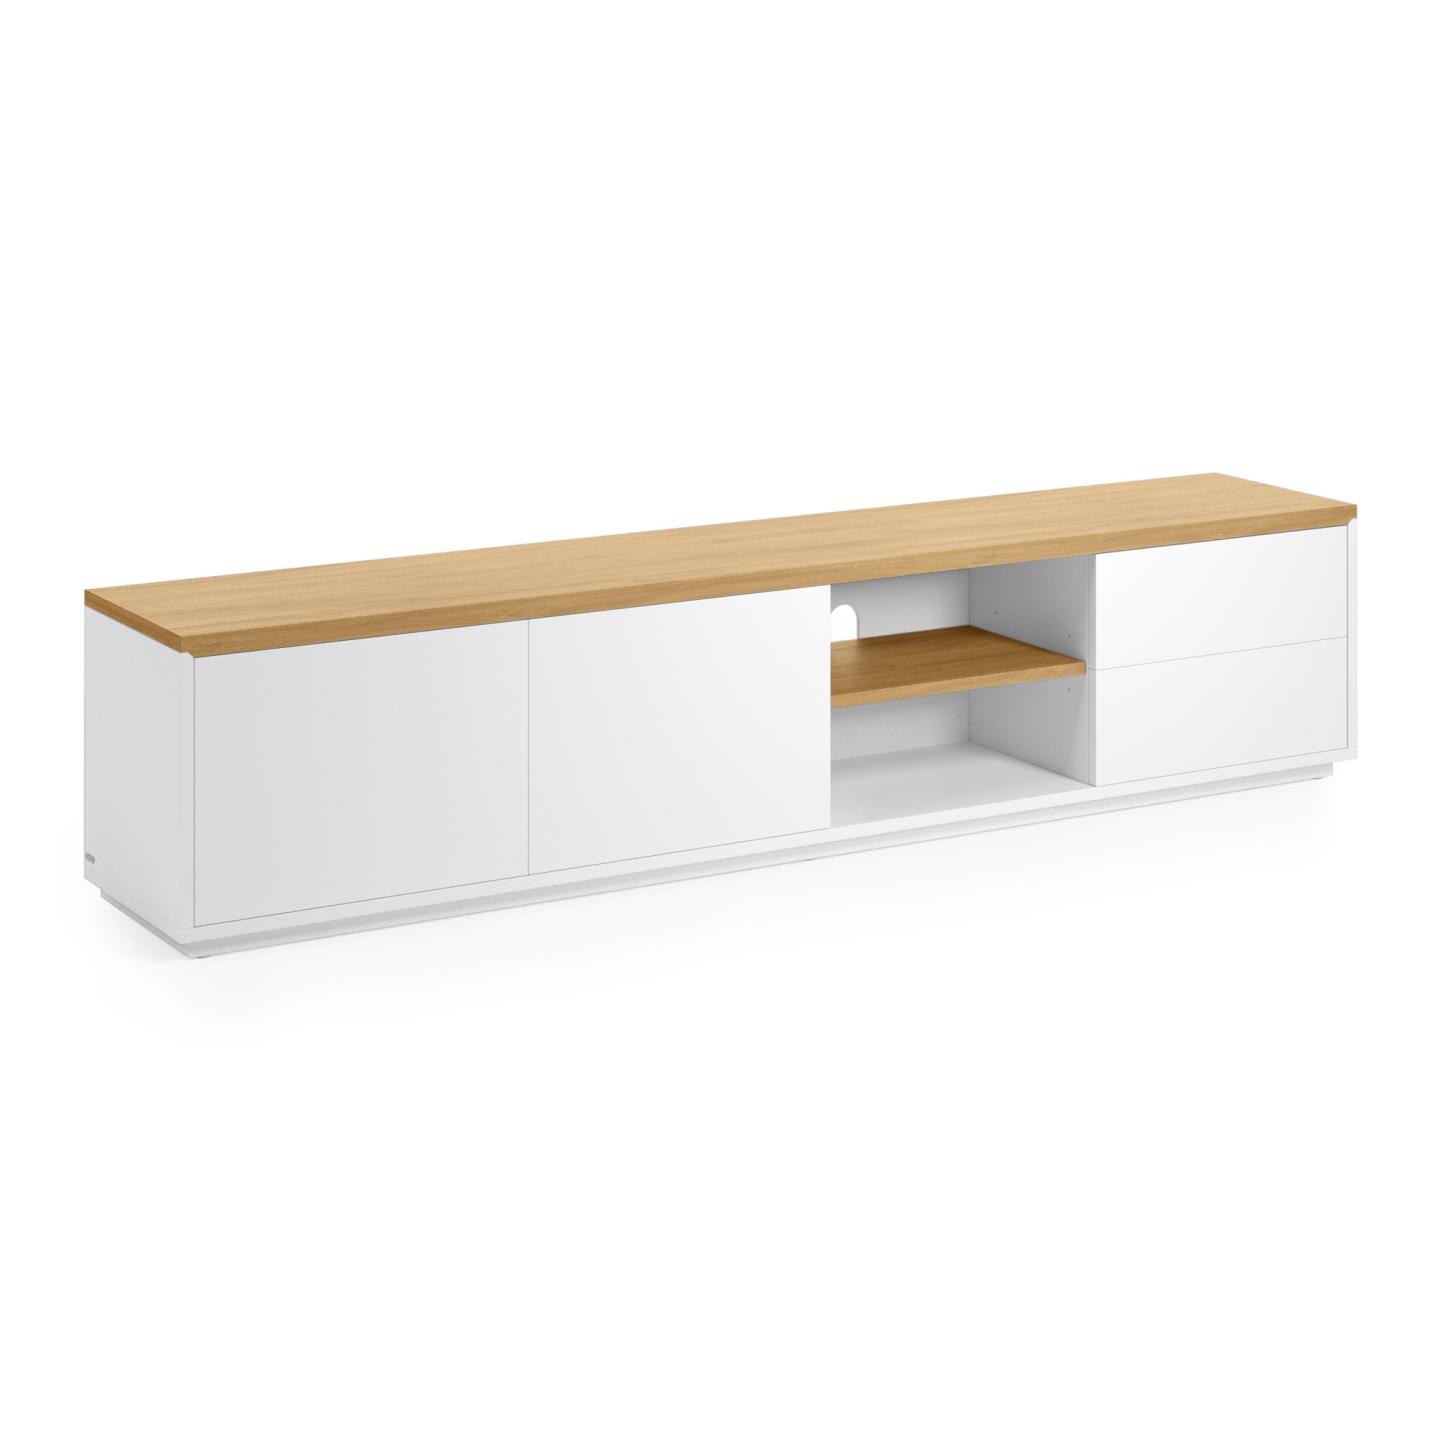 LAFORMA Abilen TV-bord, m. 2 dörrar, 2 lådor och 3 hyllor - vit MDF och naturlig ekfaner